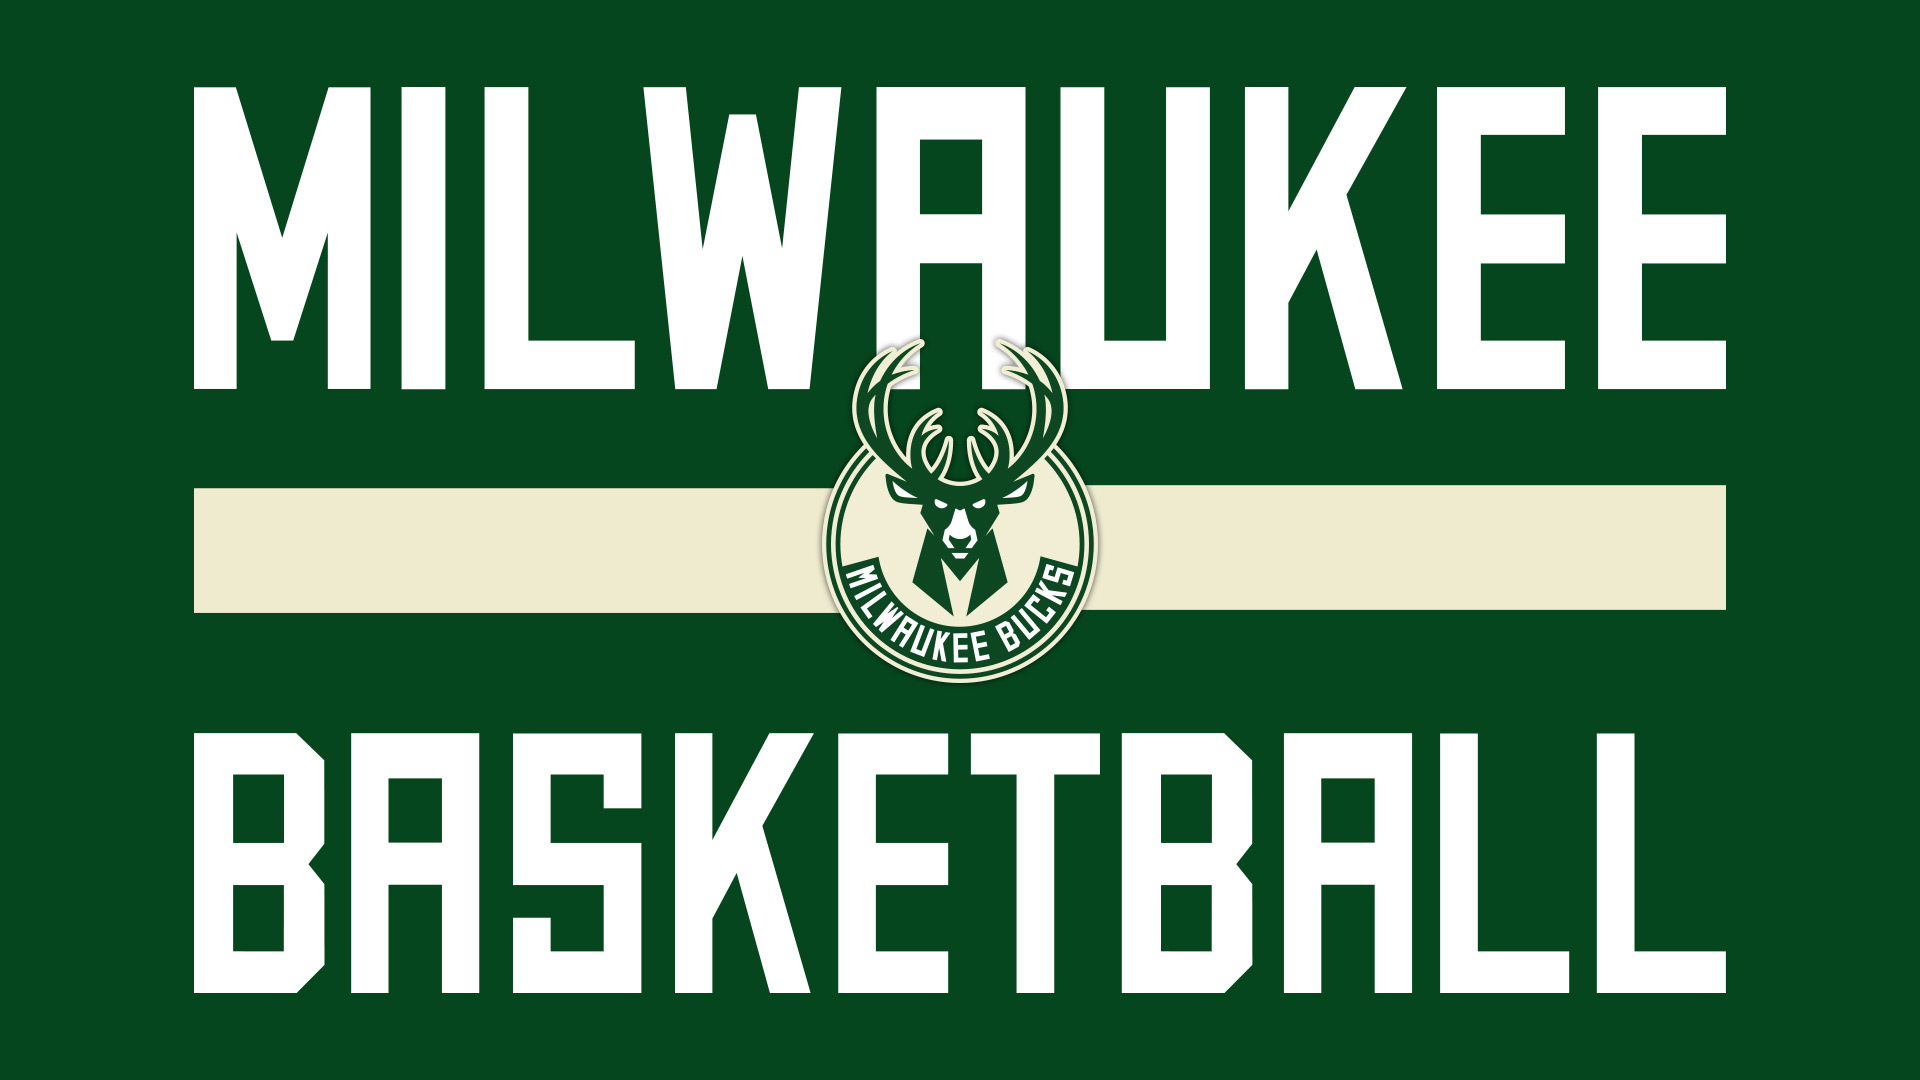 milwaukee bucks, sports, basketball, emblem, logo, nba, symbol